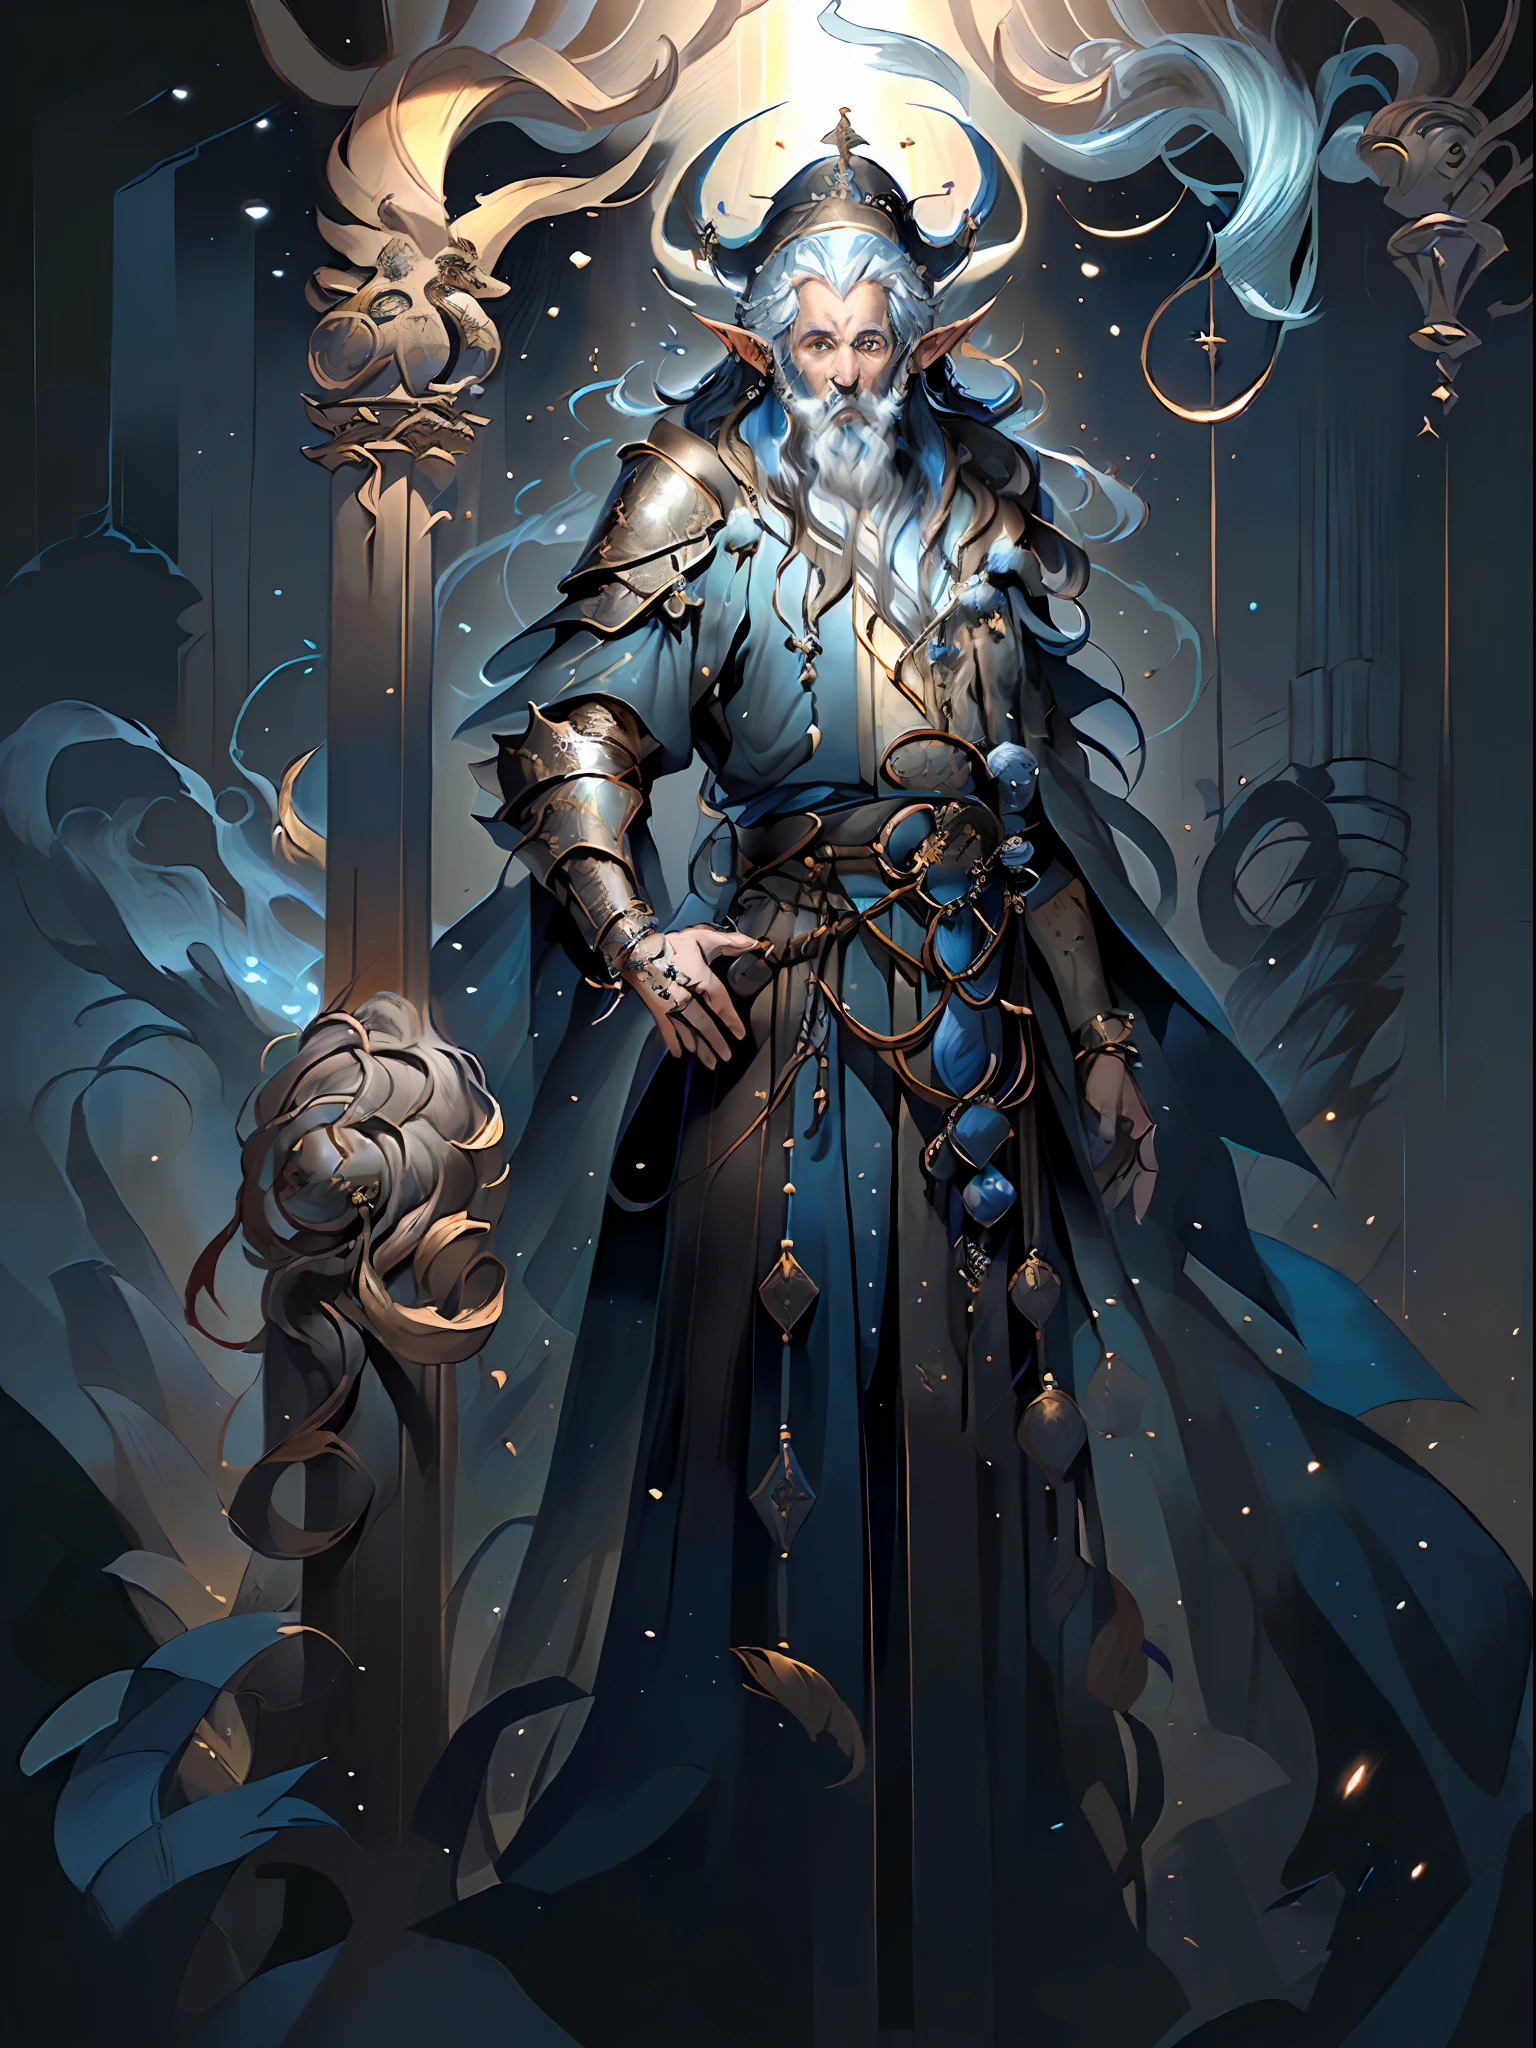 ((Hombre arafed con un traje azul y negro de pie en un bosque, Magia para la reunión de hechiceros, Retrato de un mago masculino, mago masculino, Retrato de un mago azul, Retrato completo del elementalista., Mago celestial masculino), (capucha, túnicas fluidas y armaduras de cuero, Chaqueta azul), (Retrato de un mago elfo masculino, Sacerdote elfo masculino))